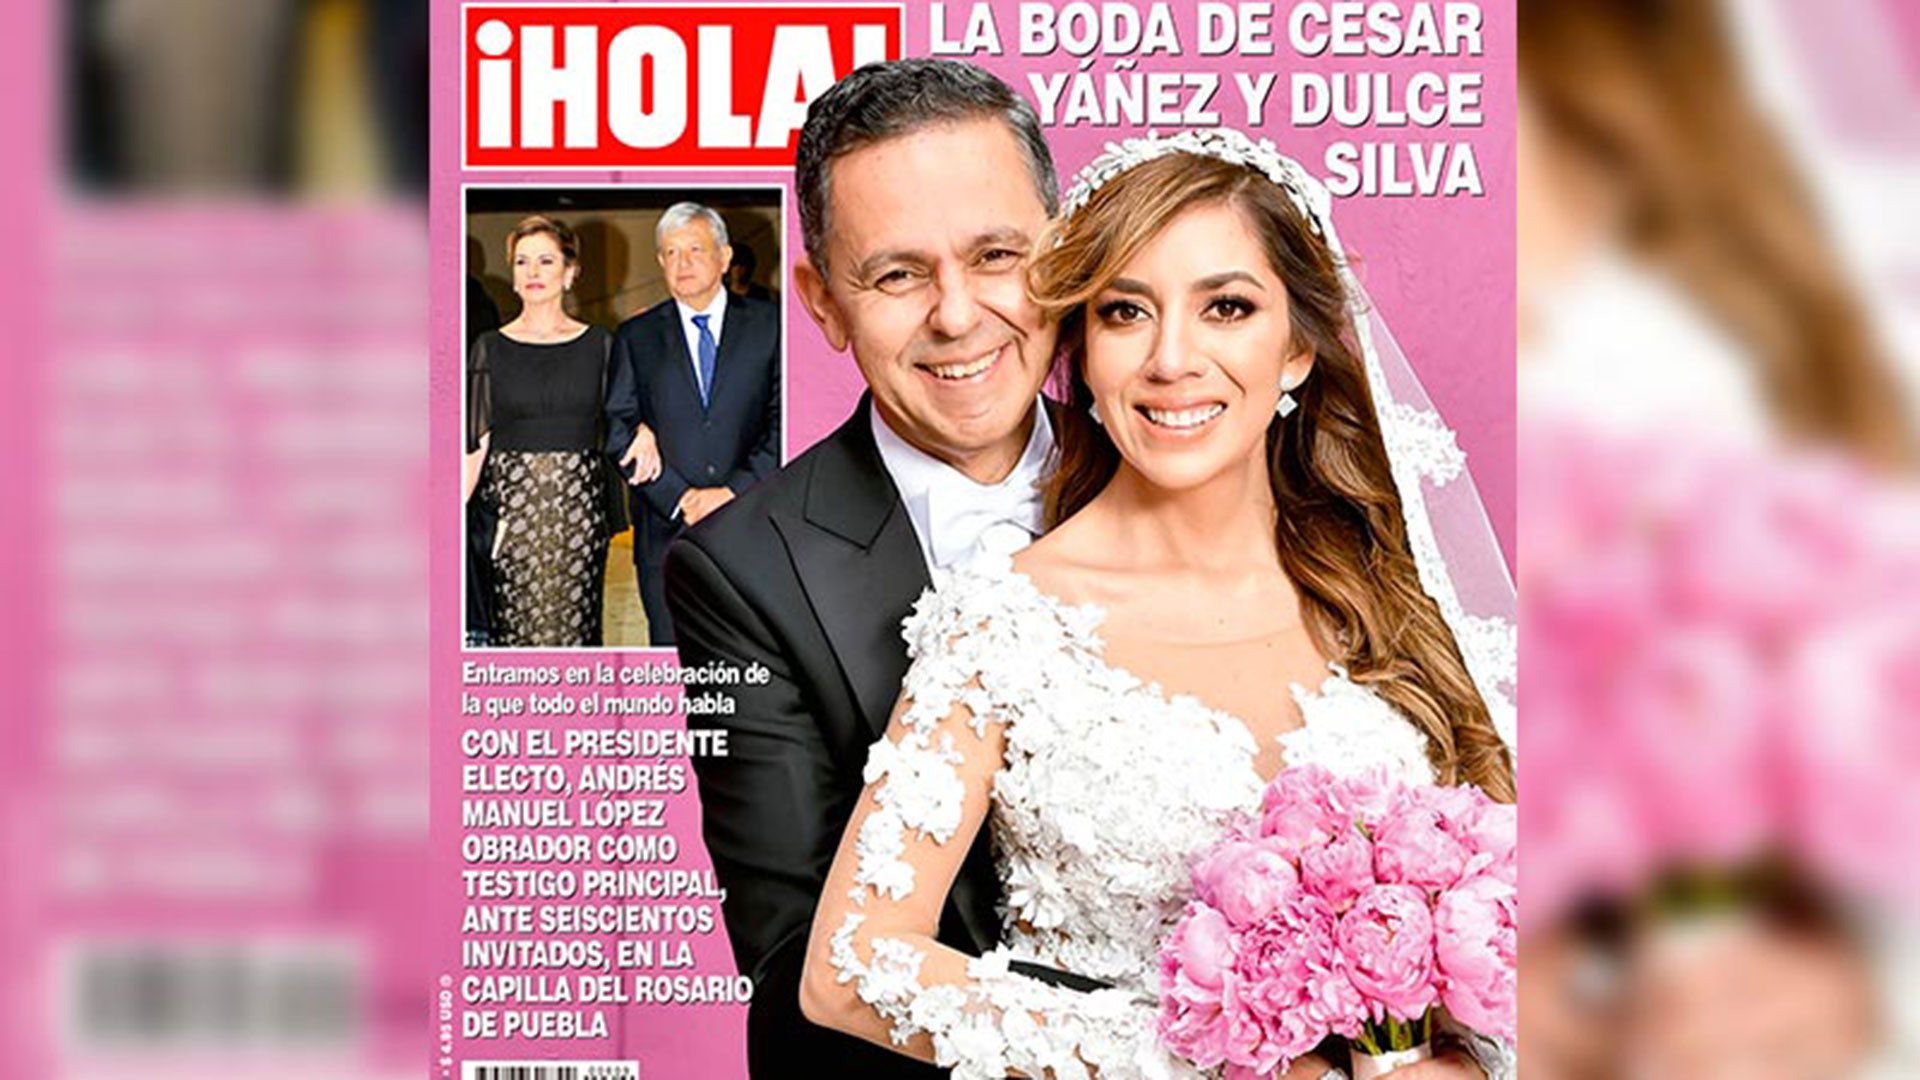 La portada de la revista Hola que ofrece 19 páginas de la boda de César Yáñez, colaborador de López Obrador.